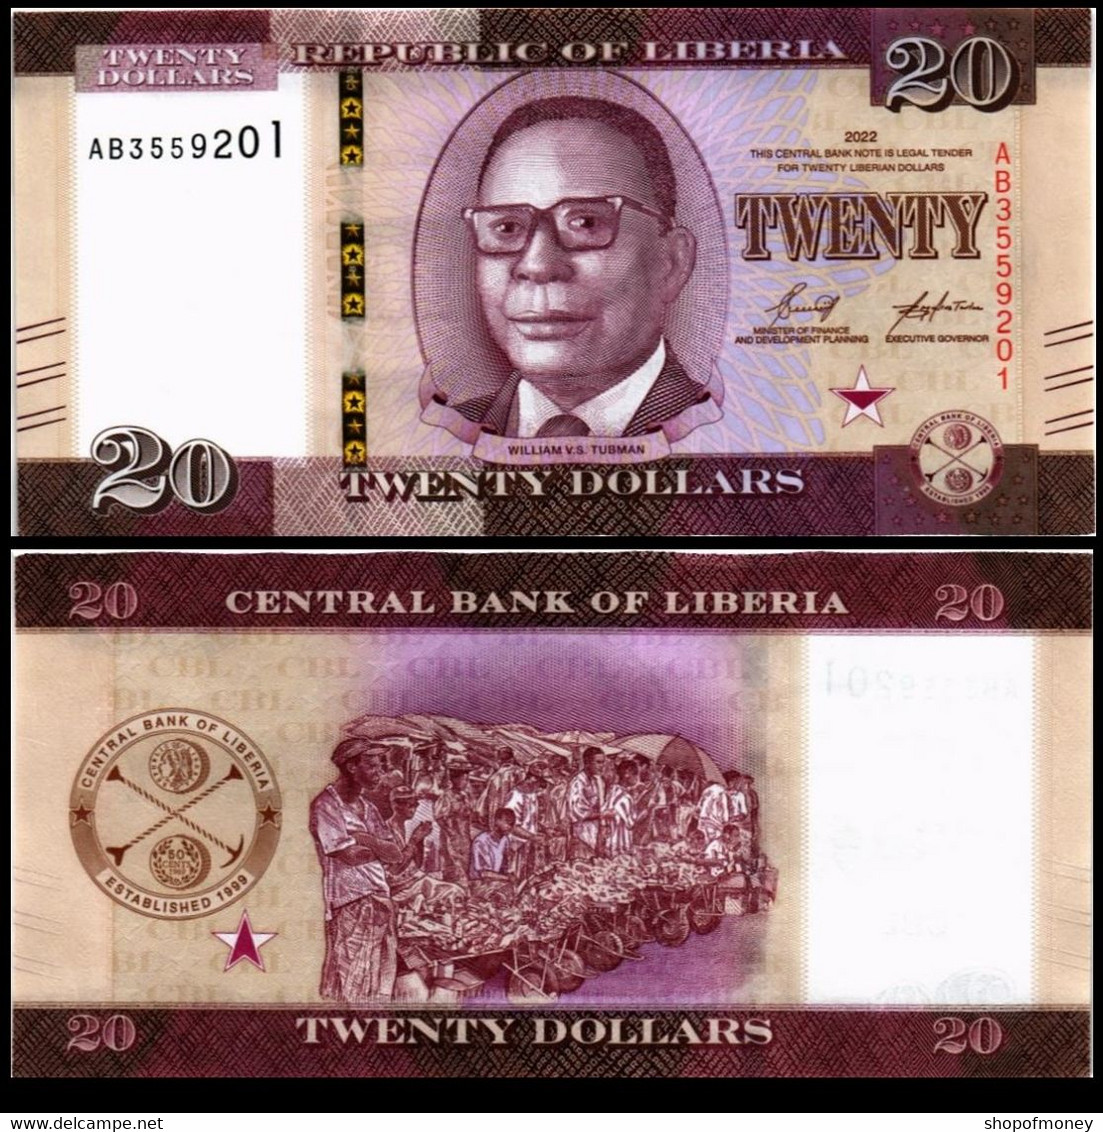 LIBERIA 20 DOLLARS 2022 P 39 UNC - Liberia